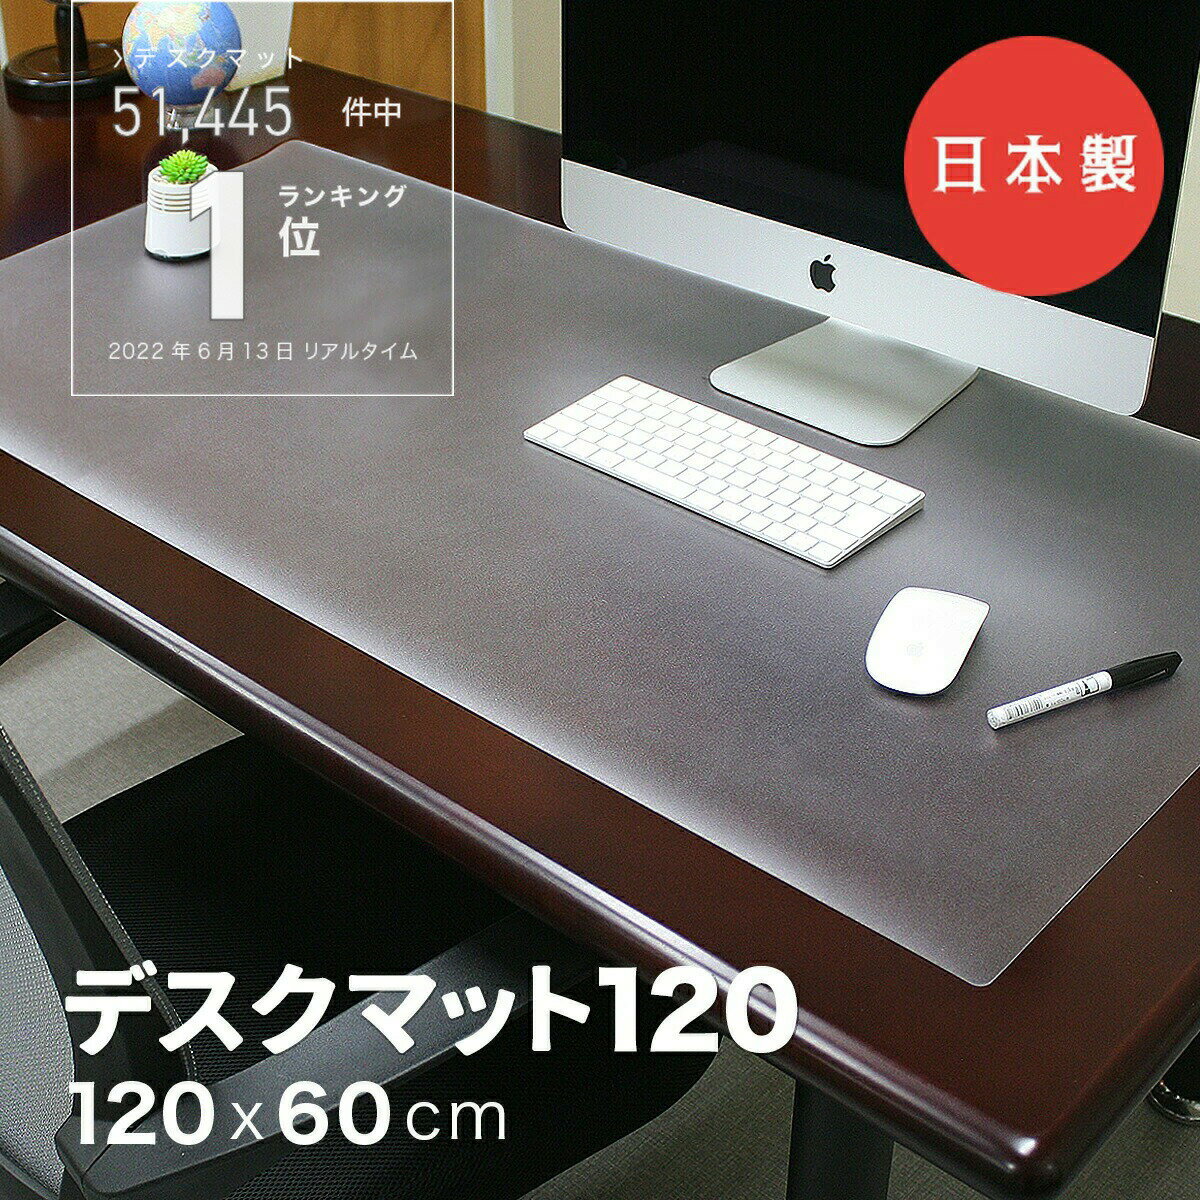 【日本製】デスクマット120 光学式マウス対応 600×12